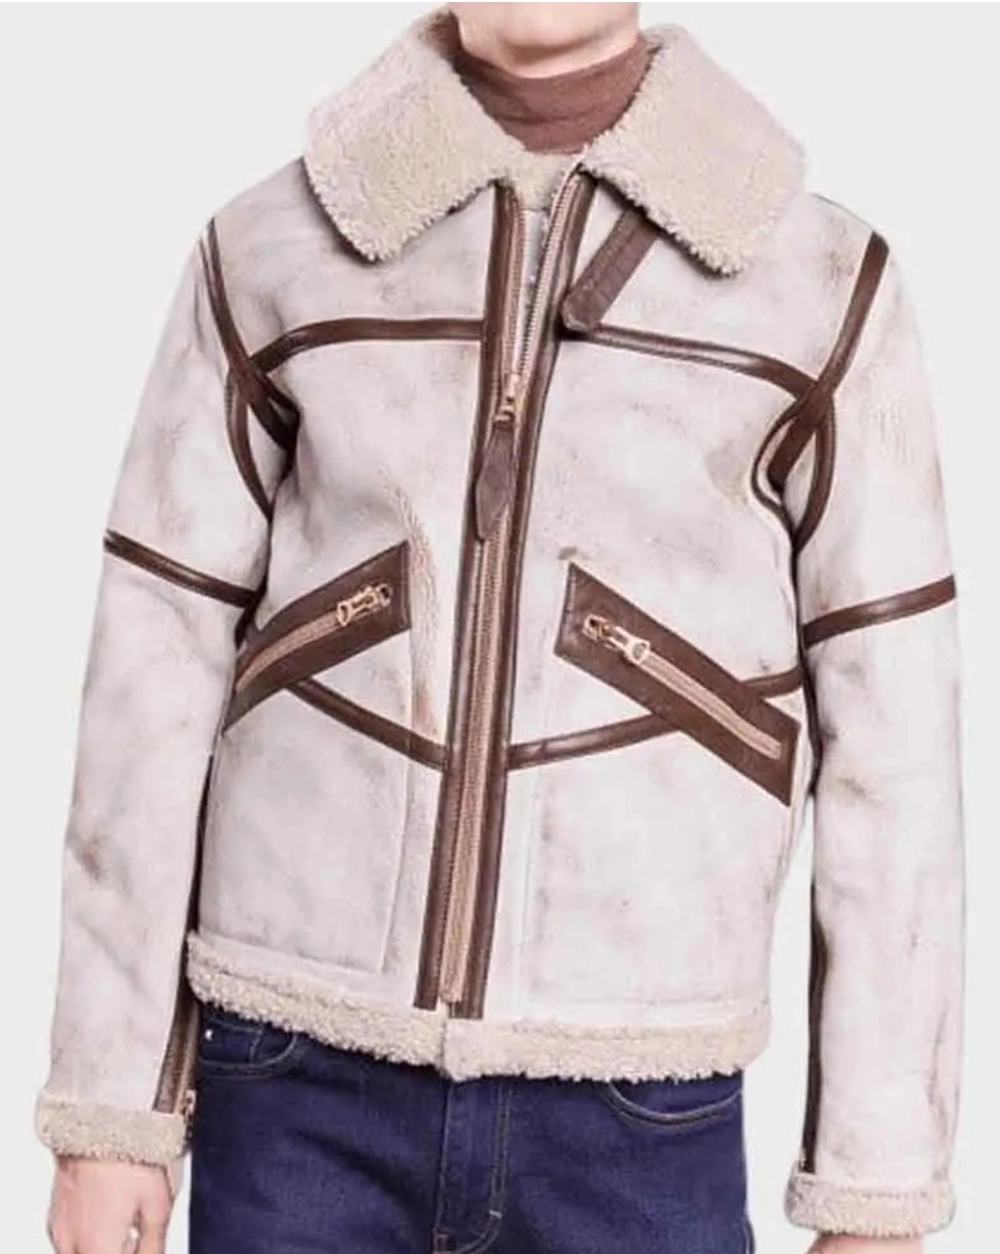 whitewaxed-jacket White Waxed Leather Jacket